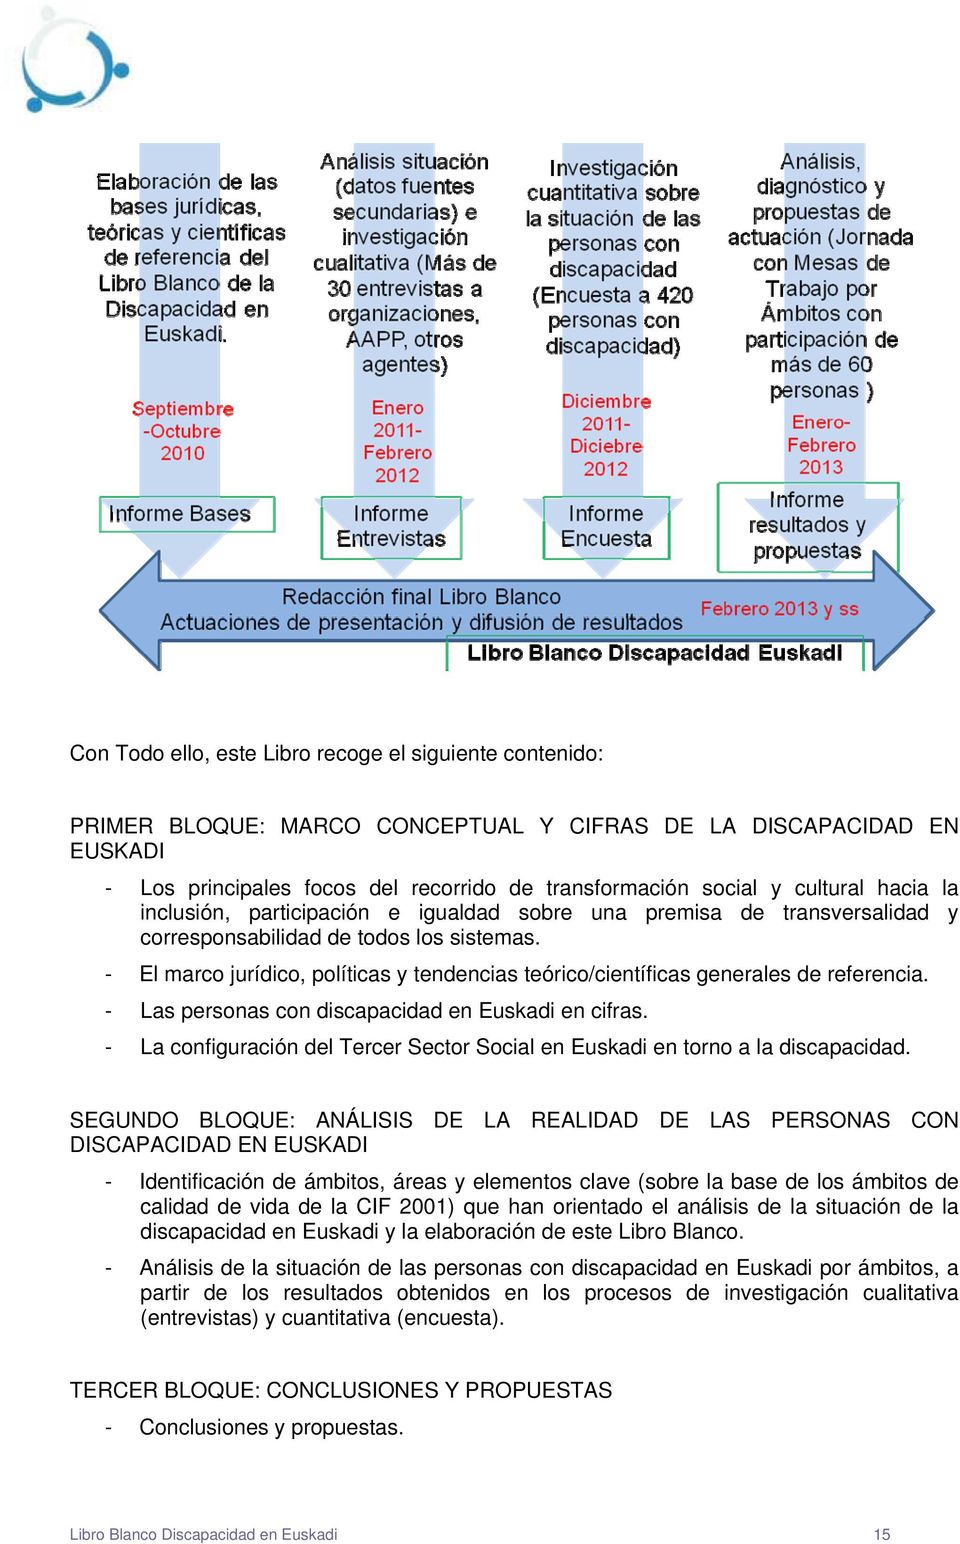 - El marco jurídico, políticas y tendencias teórico/científicas generales de referencia. - Las personas con discapacidad en Euskadi en cifras.